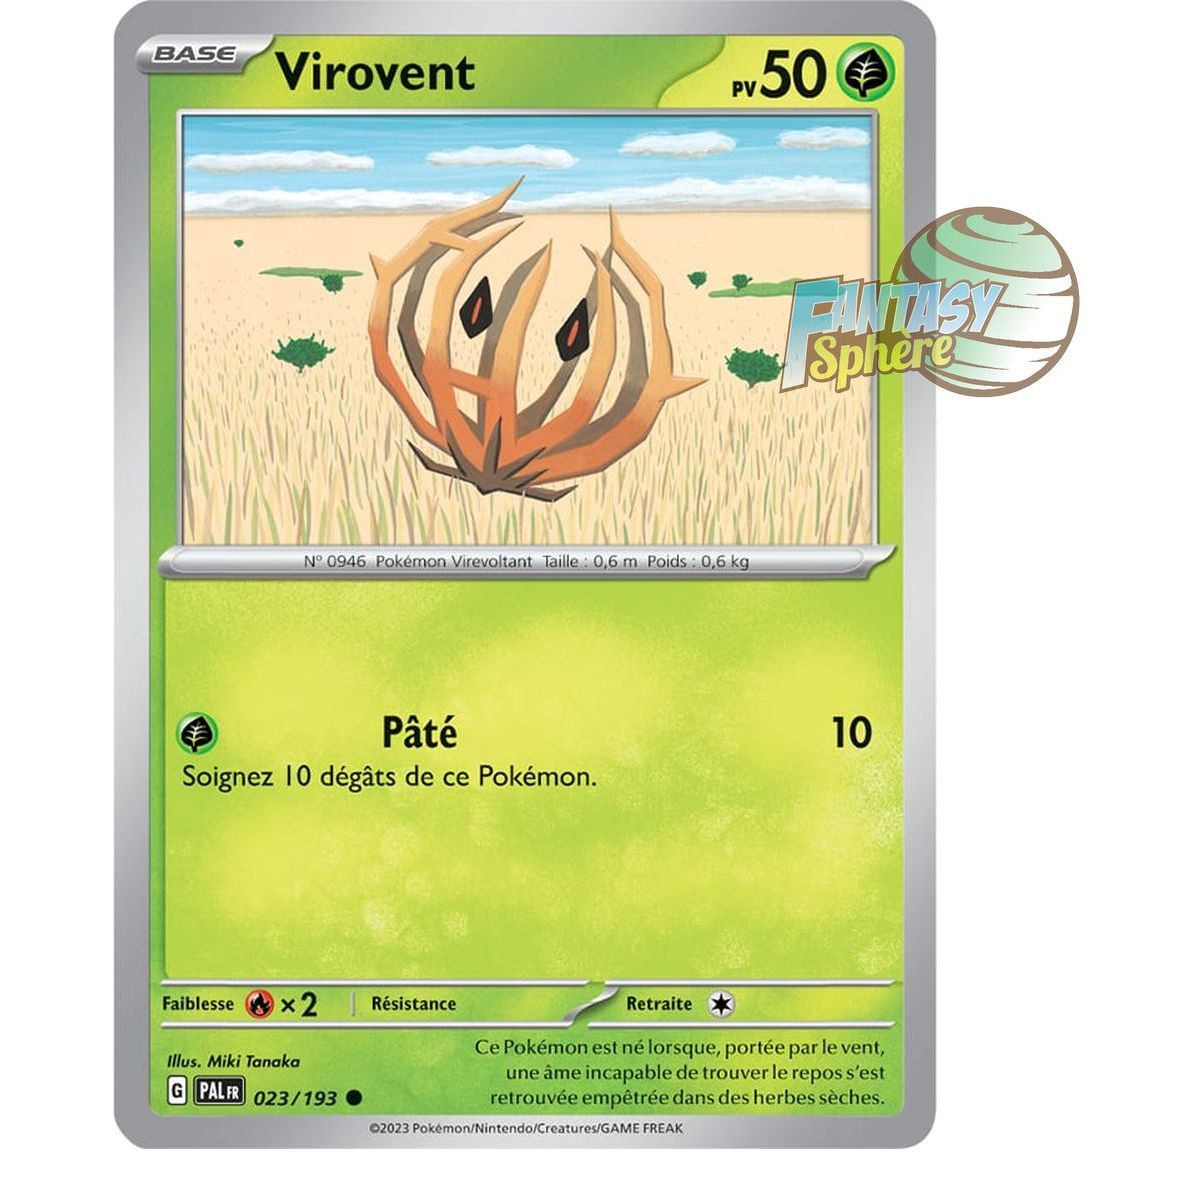 Virovent - Commune 23/193 - Ecarlate et Violet Evolution à Paldea